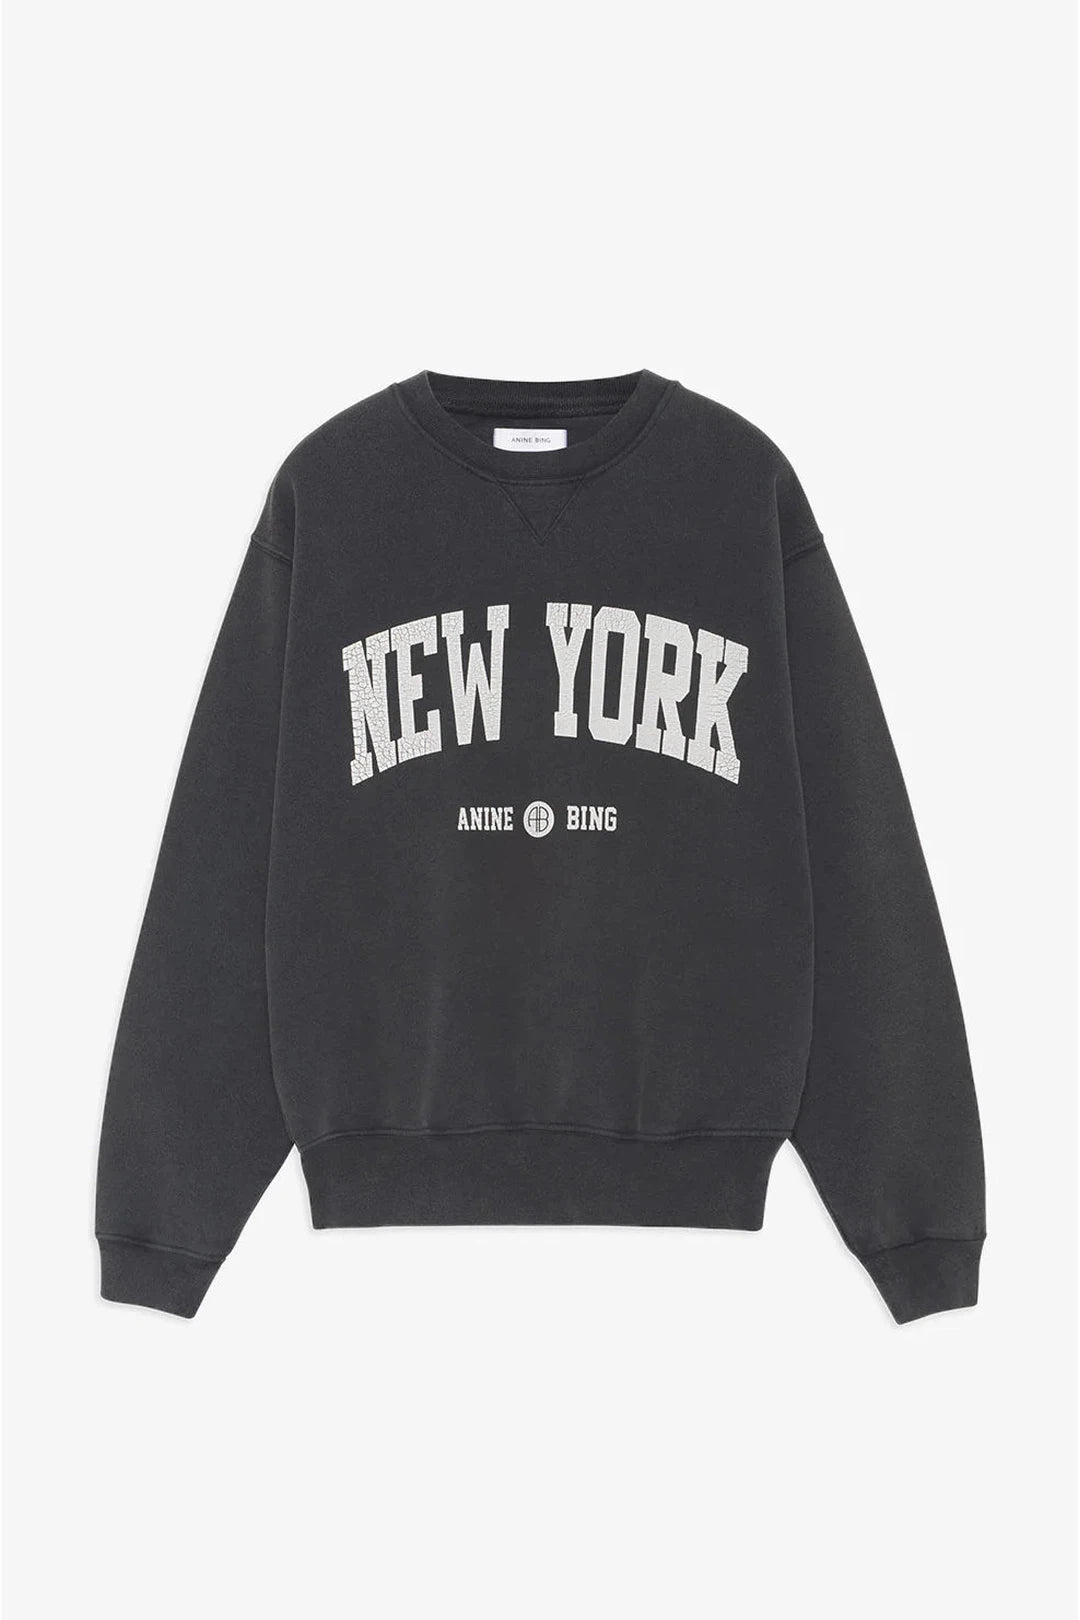 Ramona sweatshirt university new york, washed black